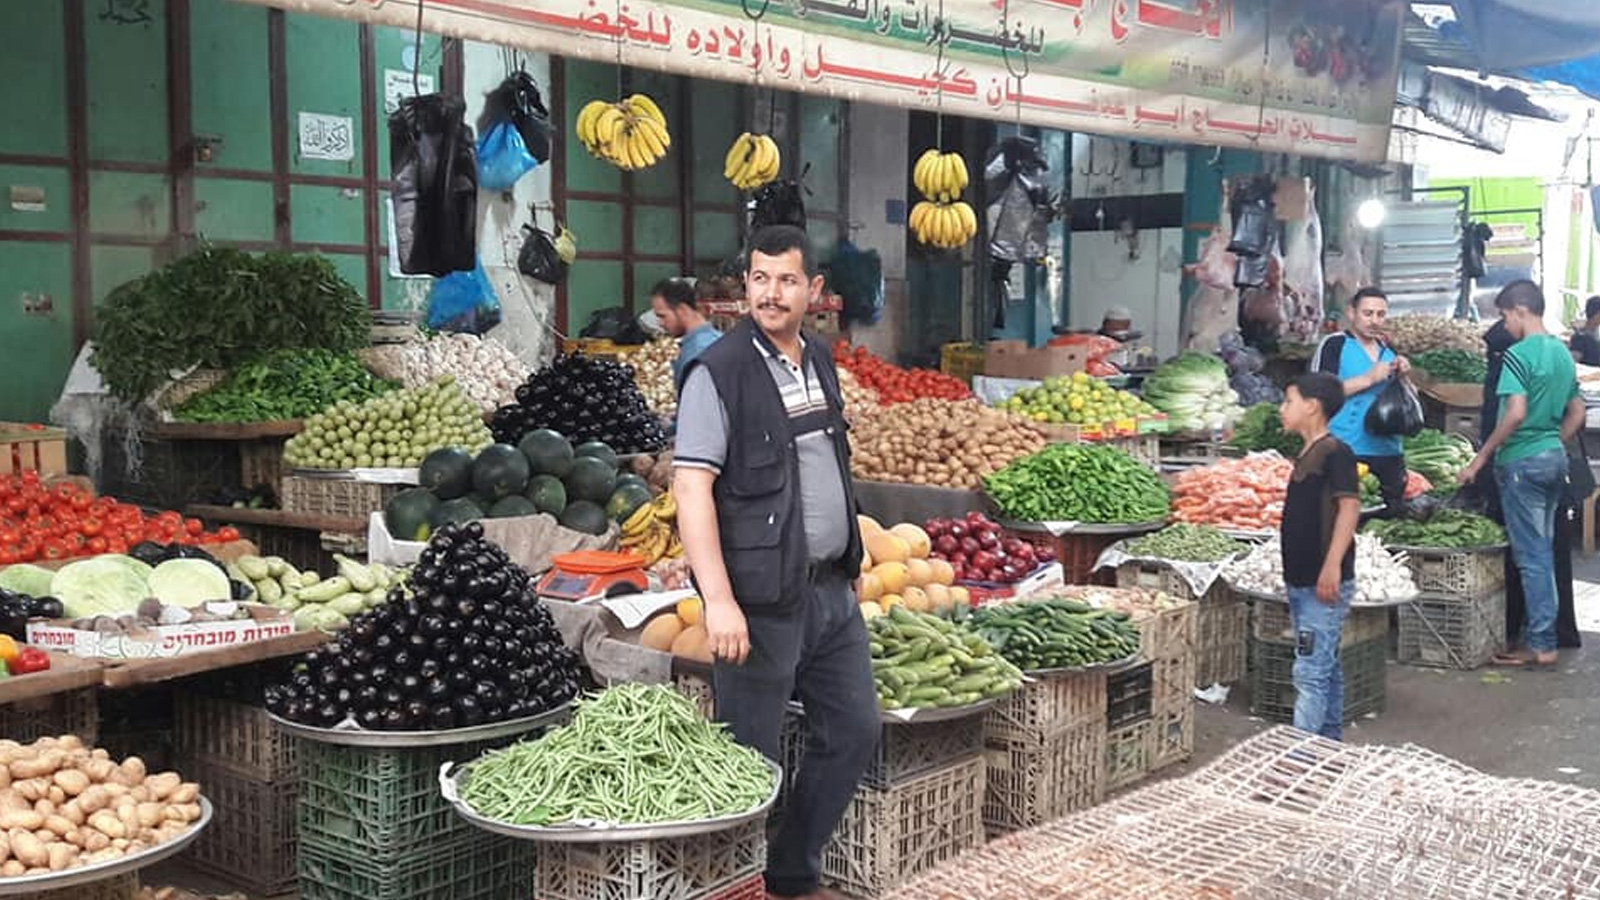 ‪في أول أيام رمضان بأسواق مدينة غزة‬ (مواقع التواصل الاجتماعي)